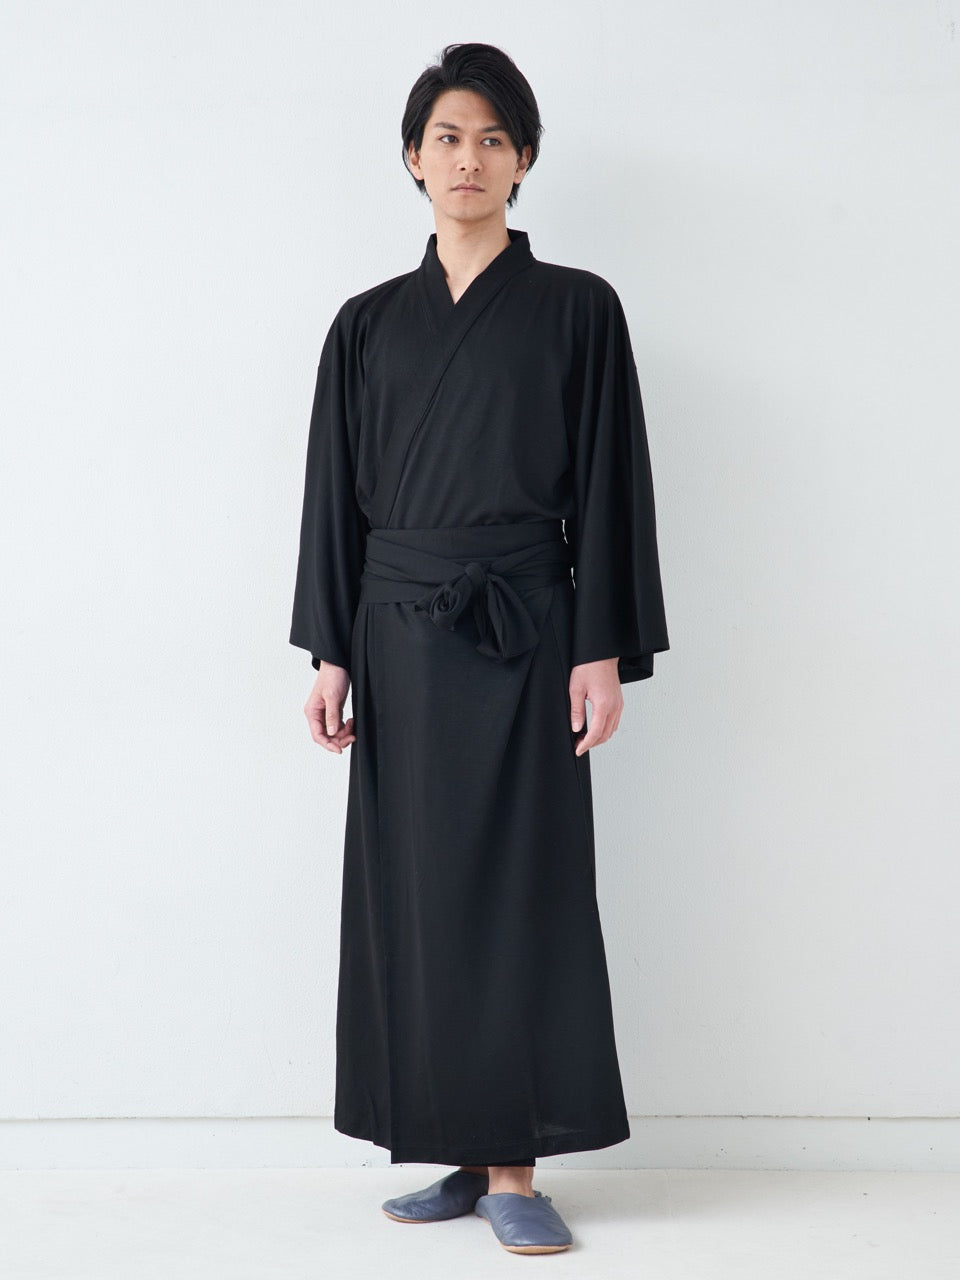 
                  
                    浴衣ルームウェア・プレミアム-ブラック- Yukata Roomwear Premium-Black-
                  
                